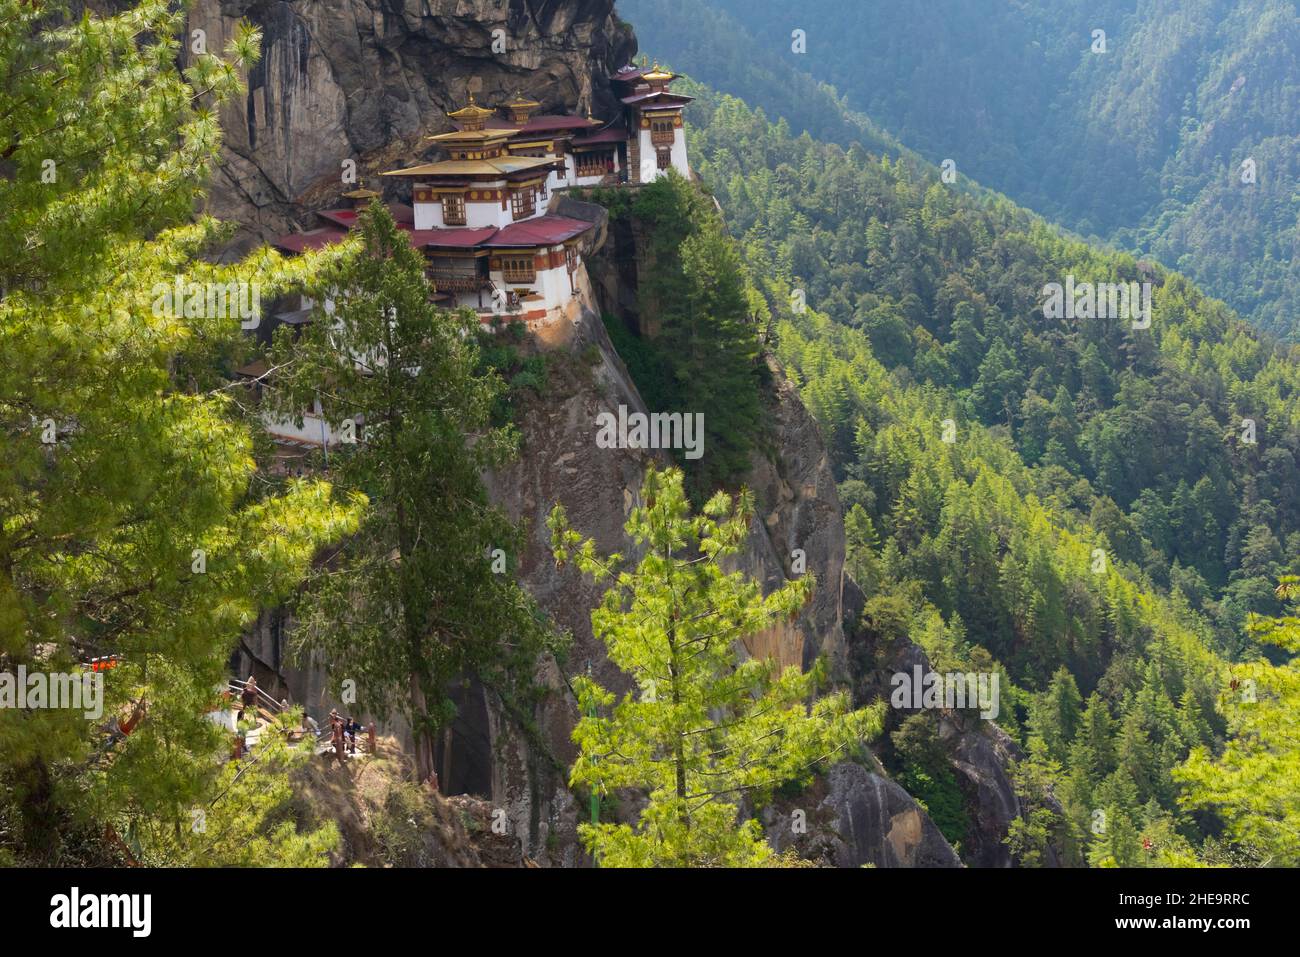 Paro Taktsang (also known as Tiger's Nest), Paro, Bhutan Stock Photo